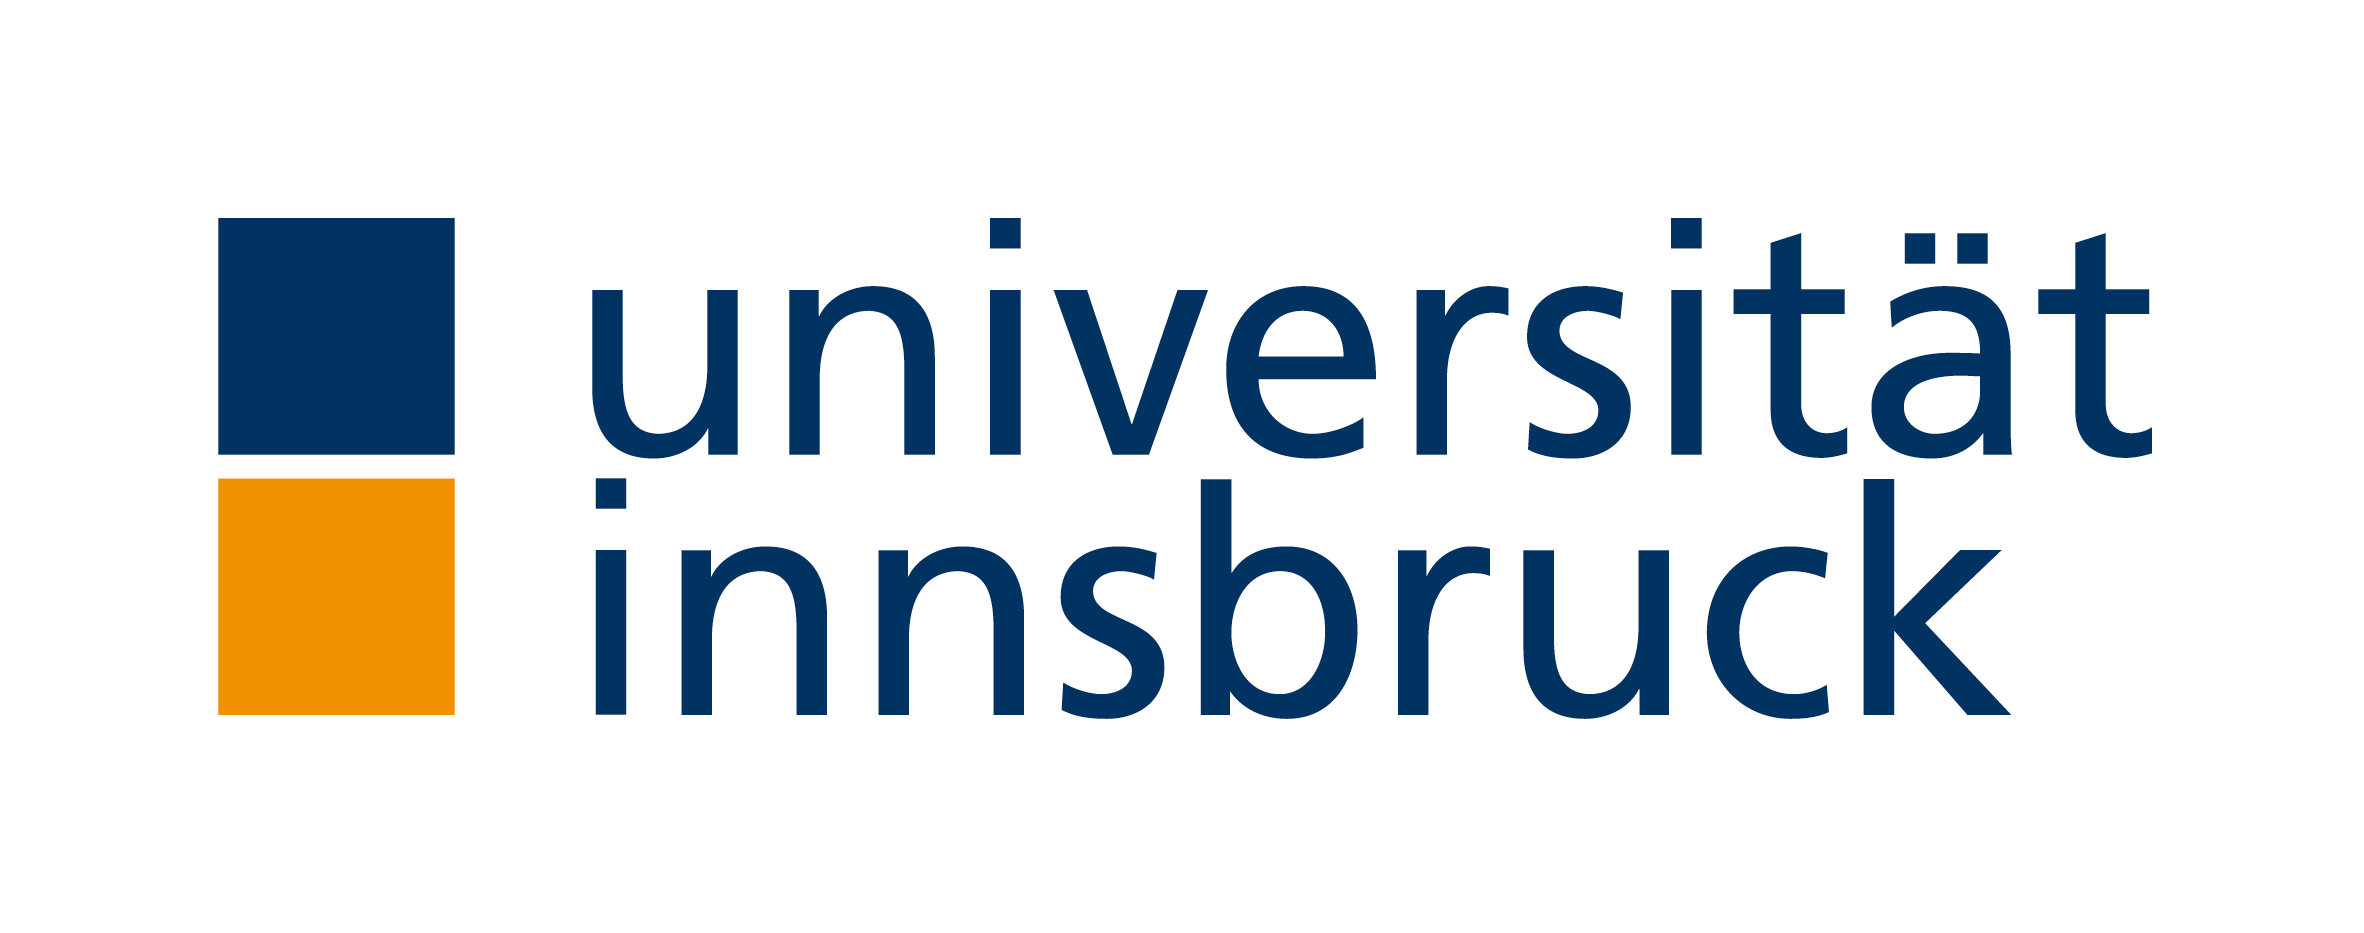 Universitatea din Innsbruck - Wikipedia